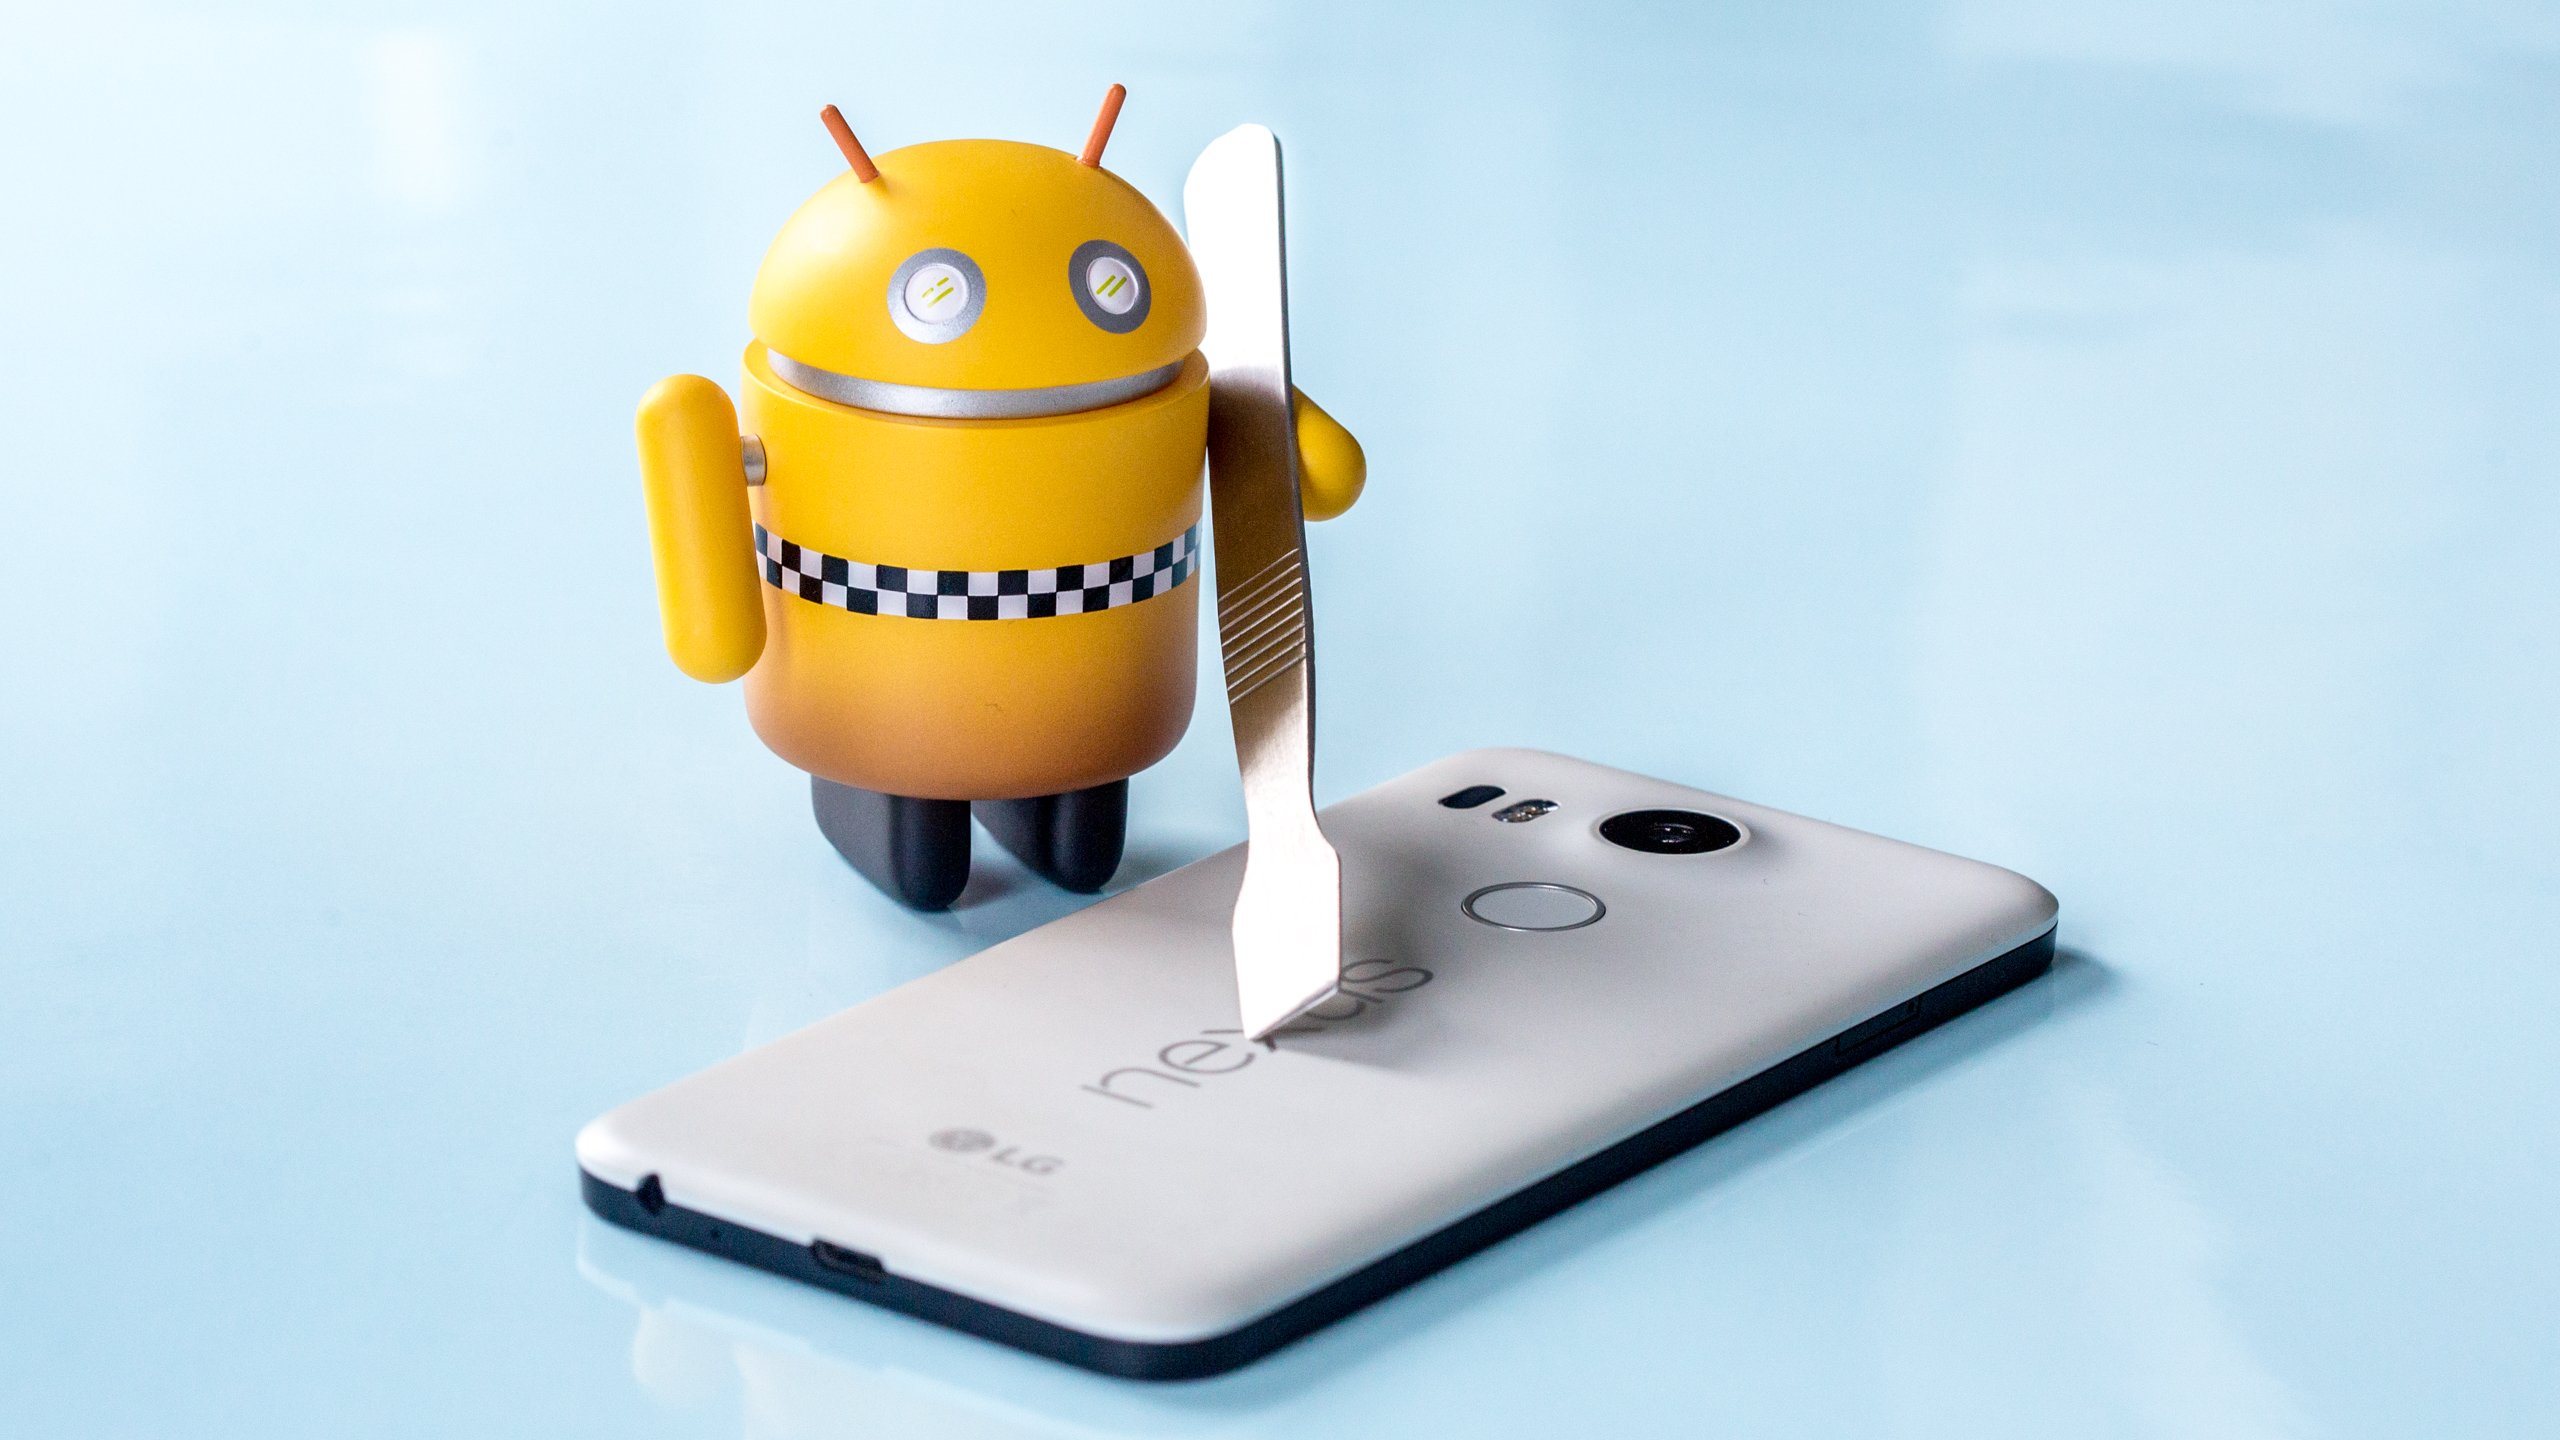 سيكون الجذر على Android 7.0 Nougat أكثر صعوبة وقد يجعل جهازك غير قابل للاستخدام